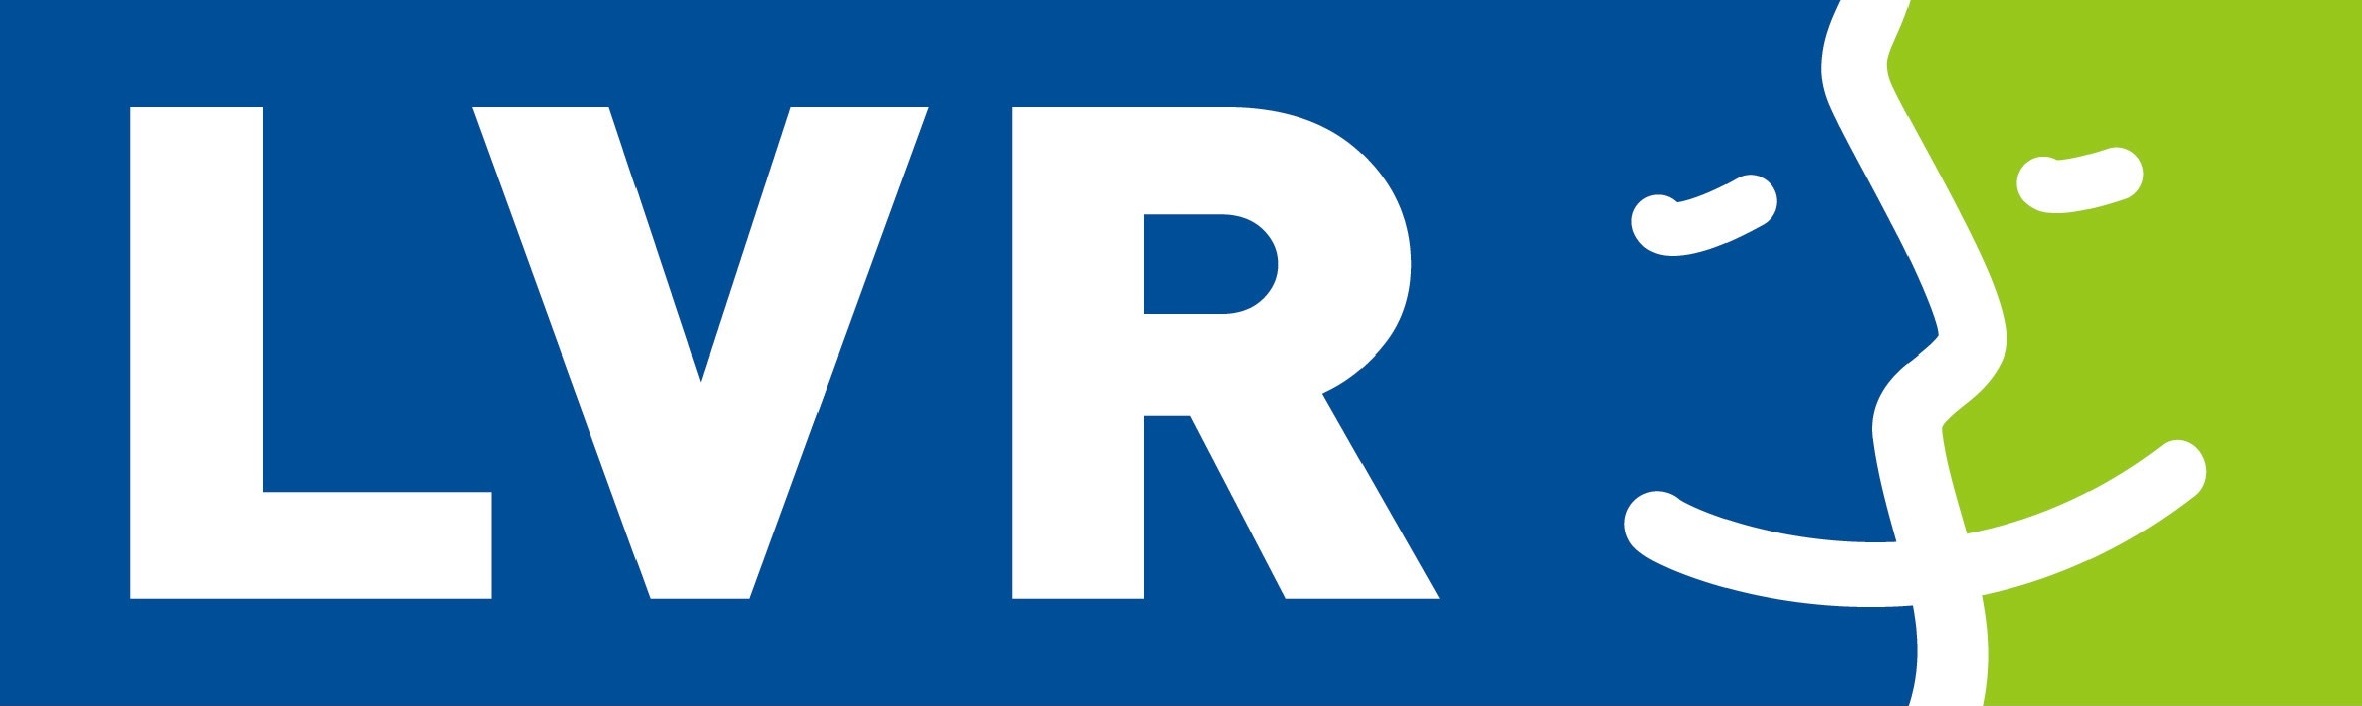 LVR-Klinik Viersen